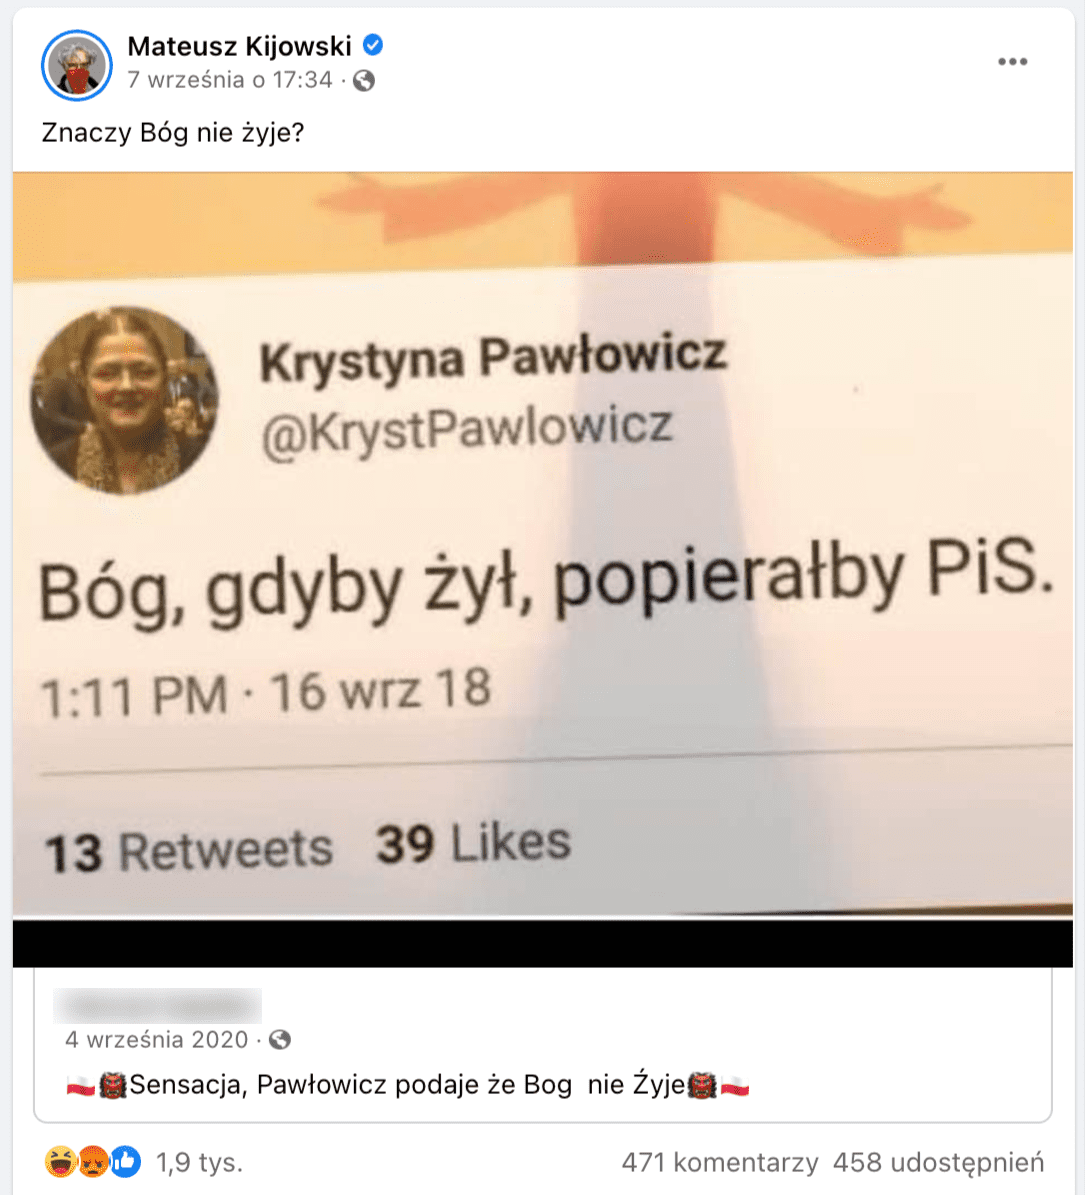 Zrzut ekranu z Facebooka z profilu Mateusza Kijowskiego. Na grafice widzimy fragment zrzutu ekranu z Twittera Krystyny Pawłowicz. Treść tweeta brzmi: „Bóg, gdyby żył, popierałby PiS”